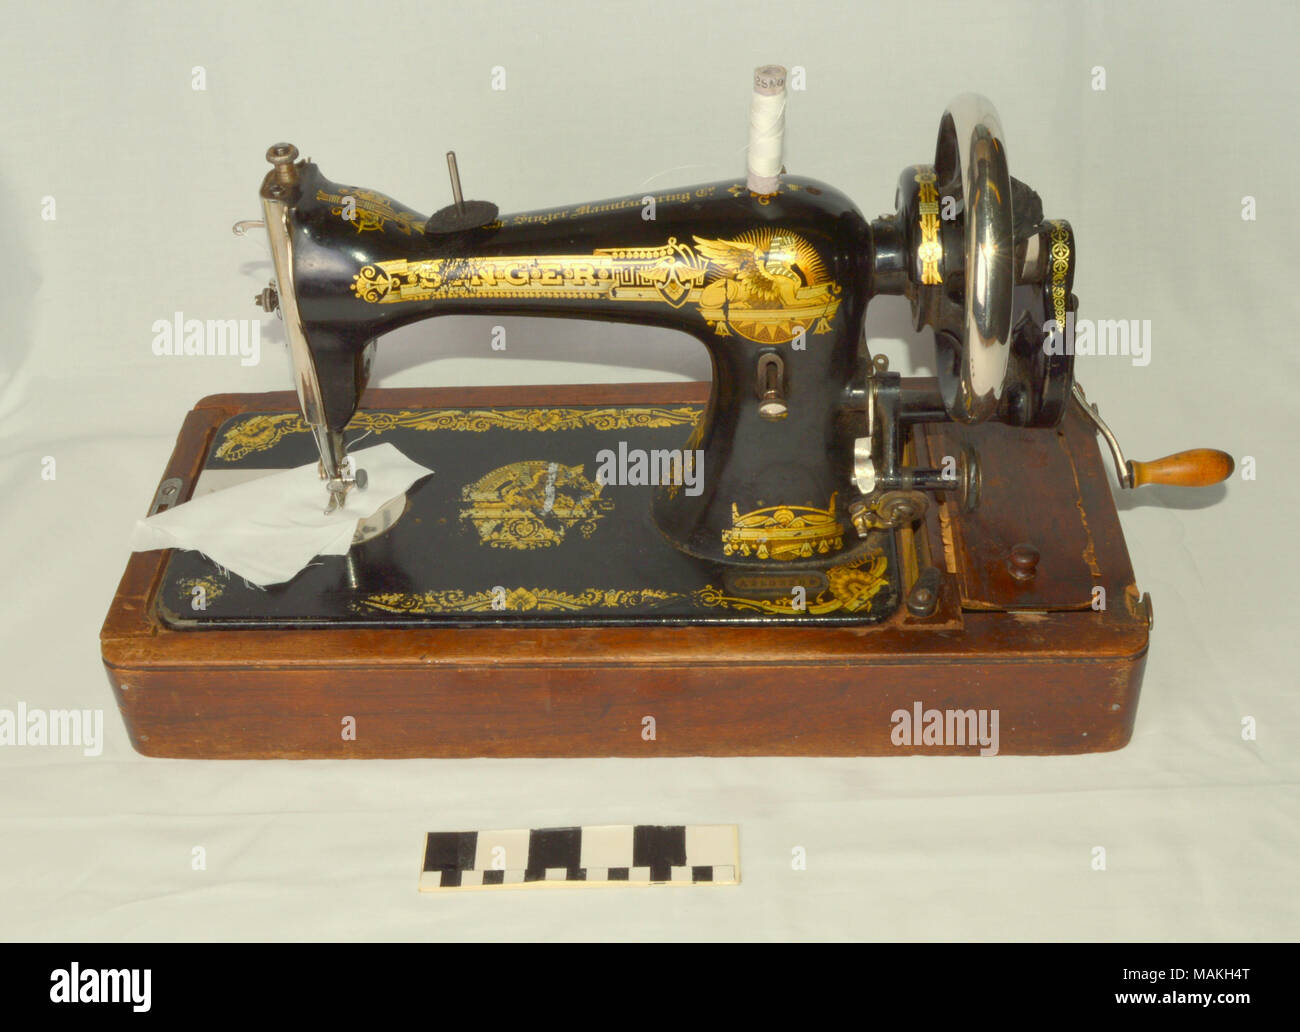 Singer sewing machine company -Fotos und -Bildmaterial in hoher Auflösung –  Alamy